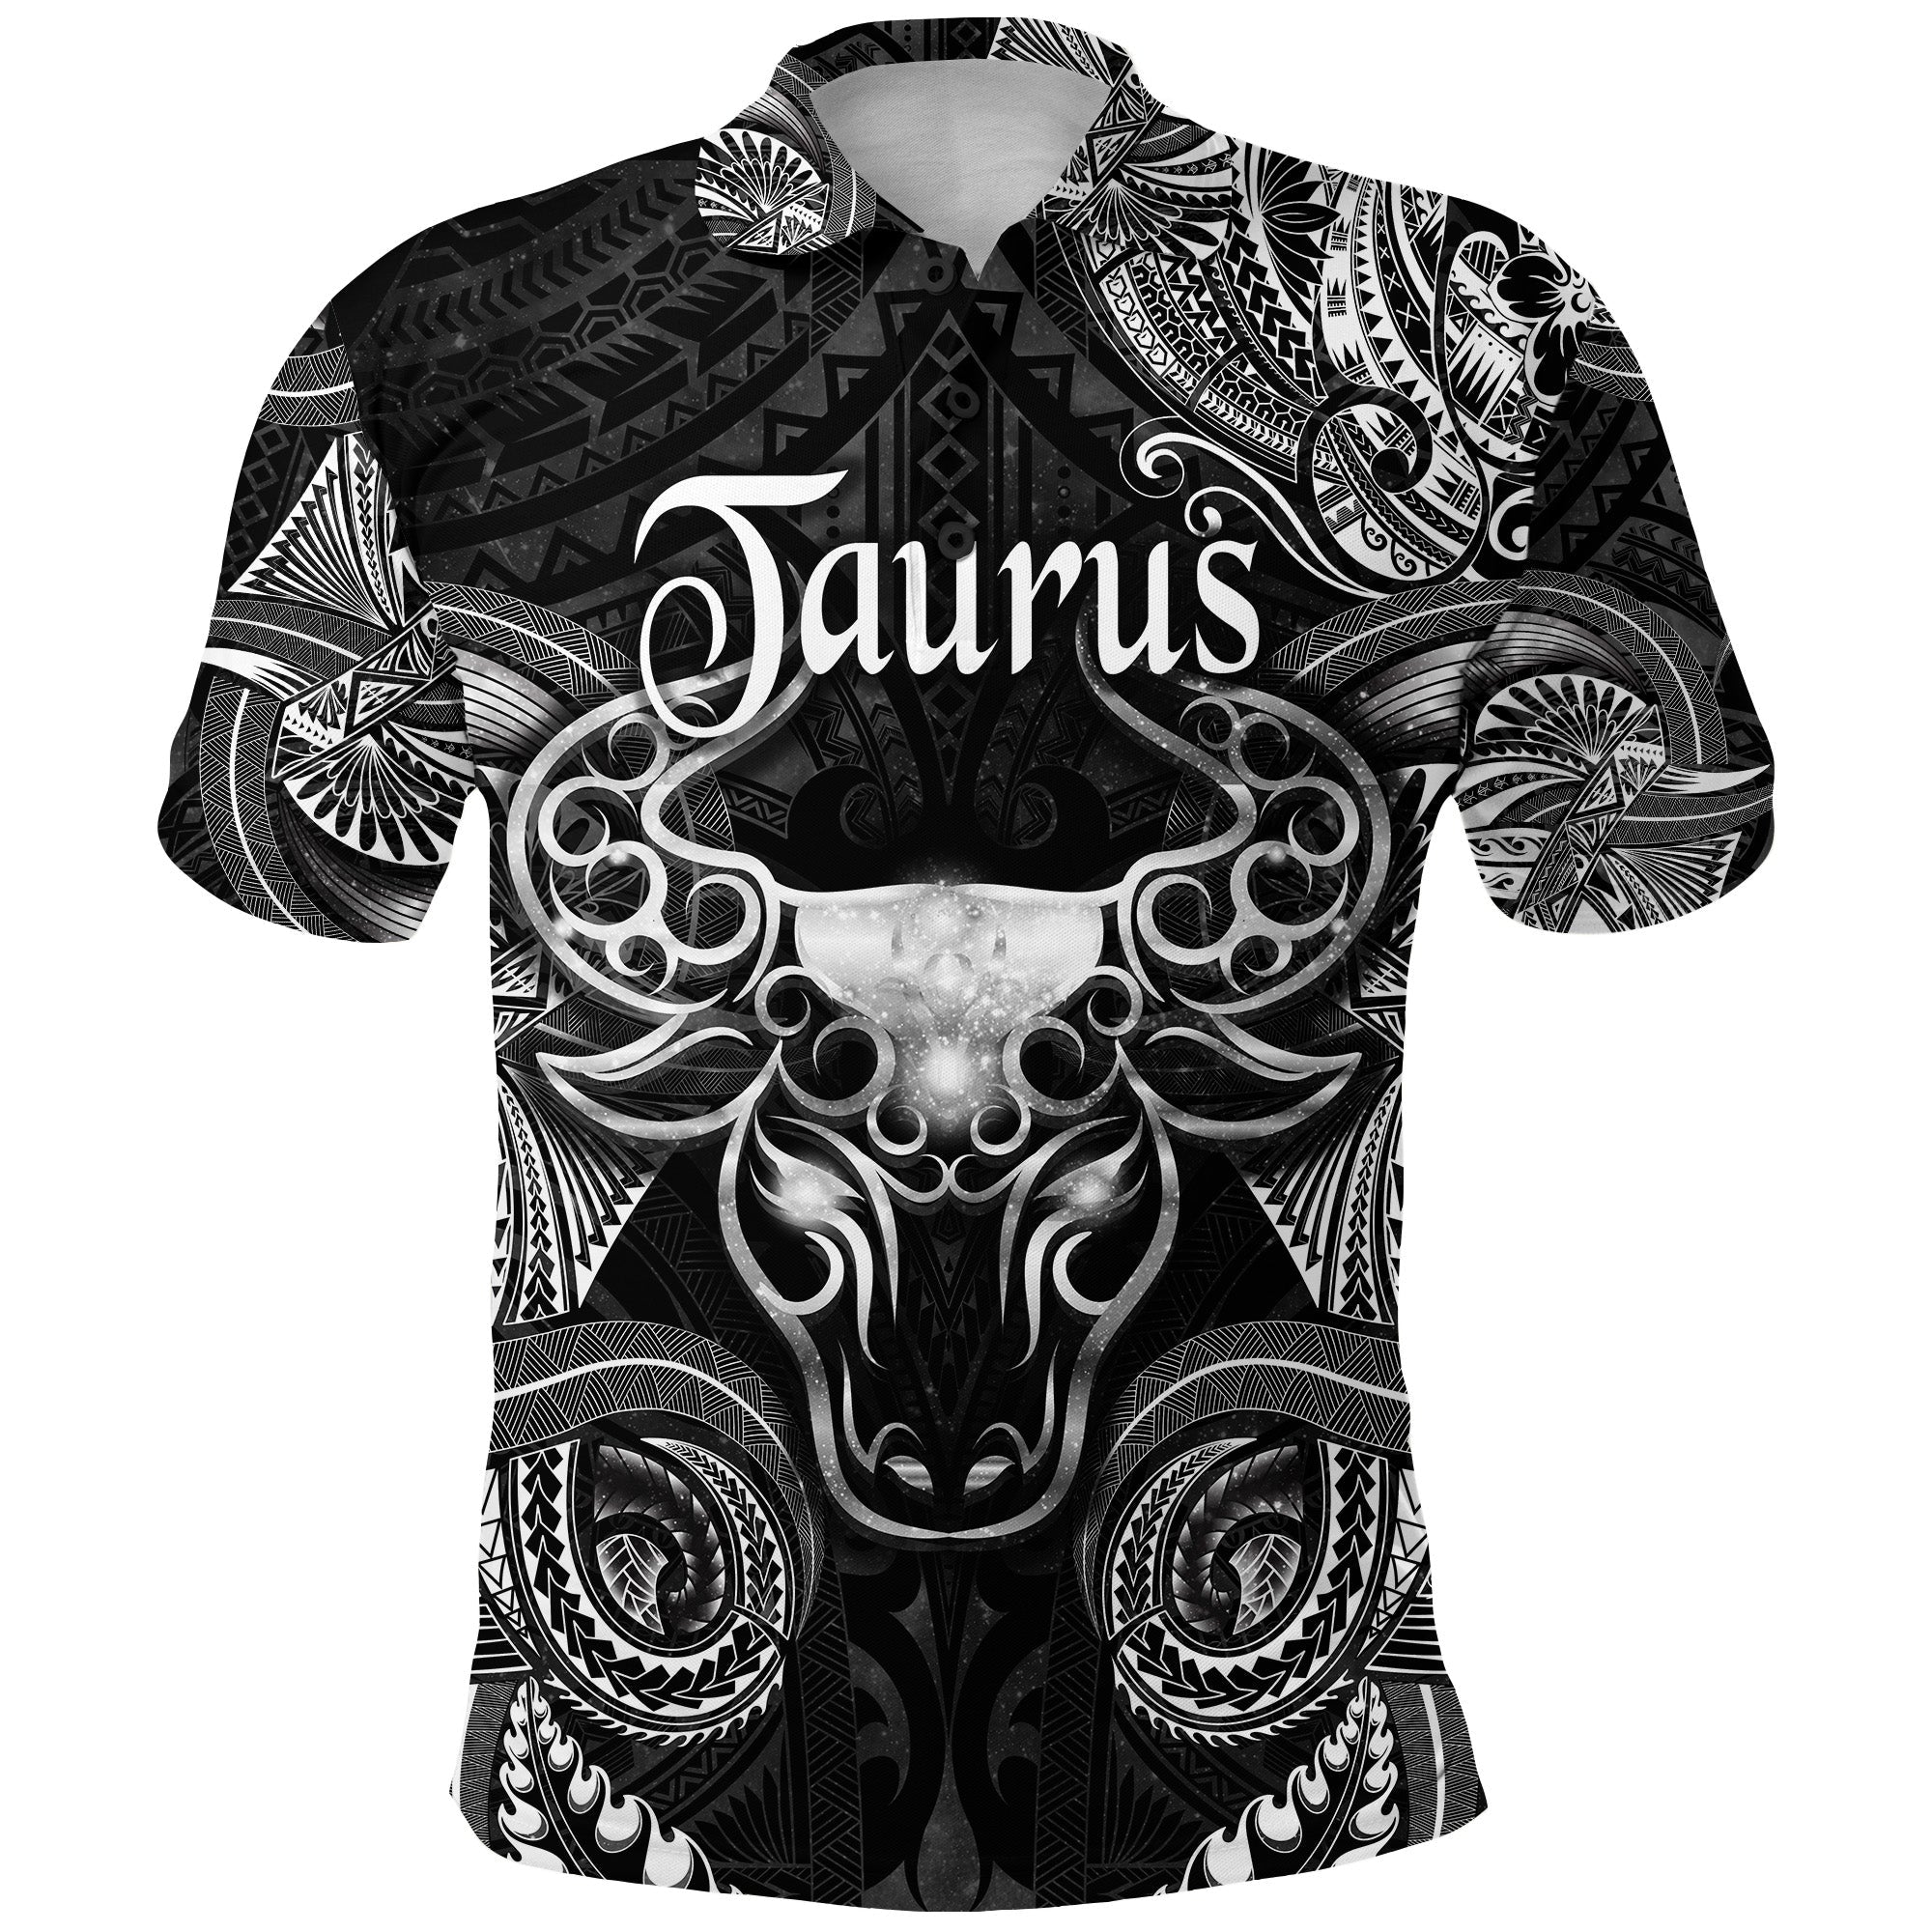 taurus-zodiac-polynesian-polo-shirt-unique-style-black